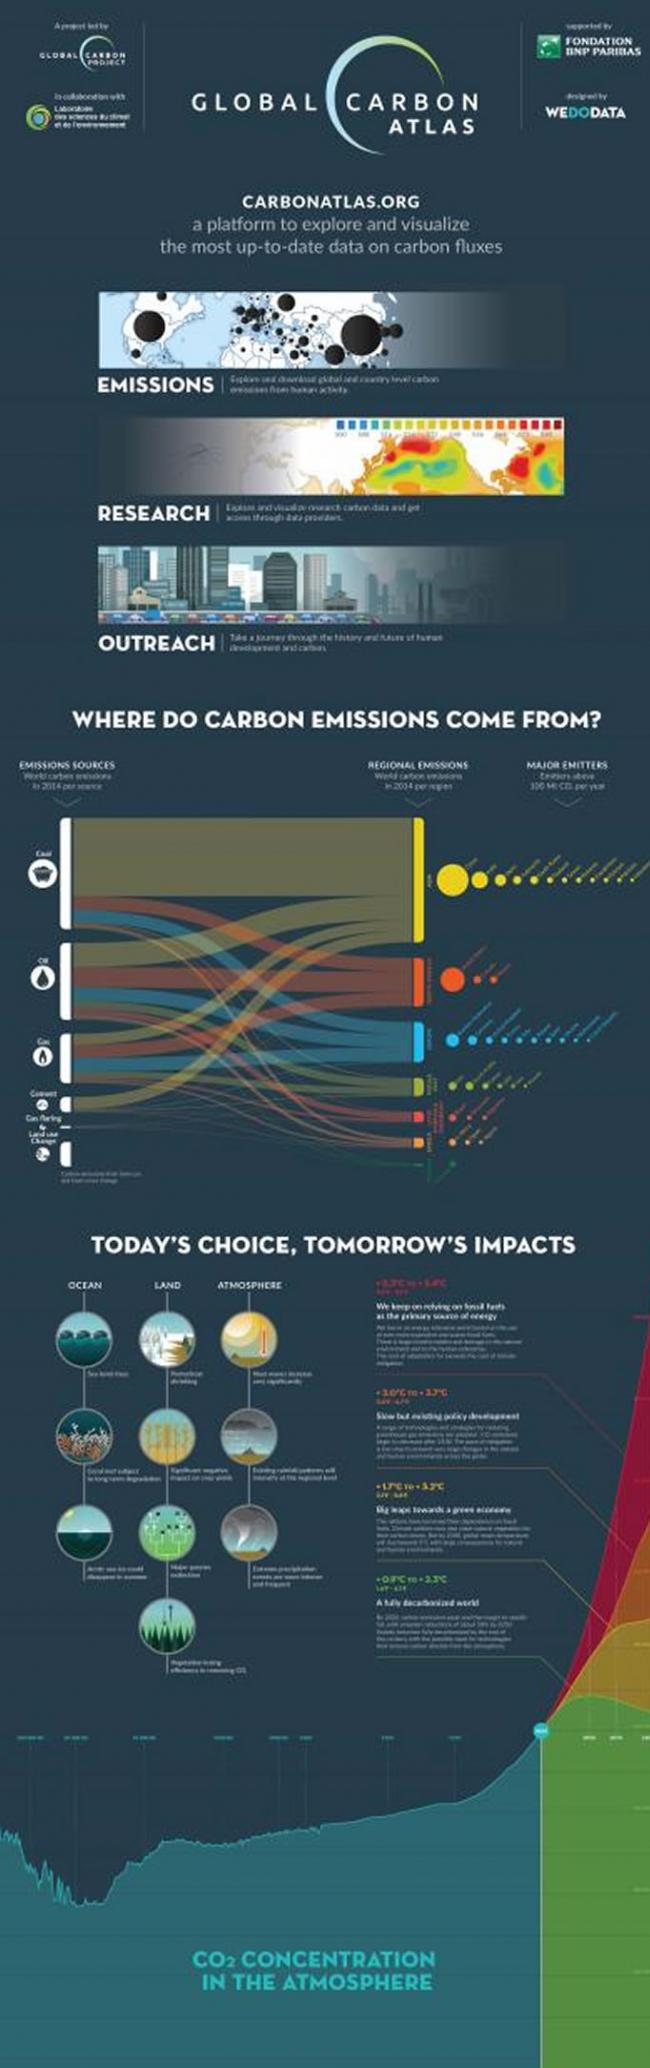 根据英国东安格利亚大学和全球碳计划项目的研究人员预计，2015年全球碳排放总量将暂停增长。2014年全球化石燃料燃烧和工业生产产生的二氧化碳排量增长仅为0.6%